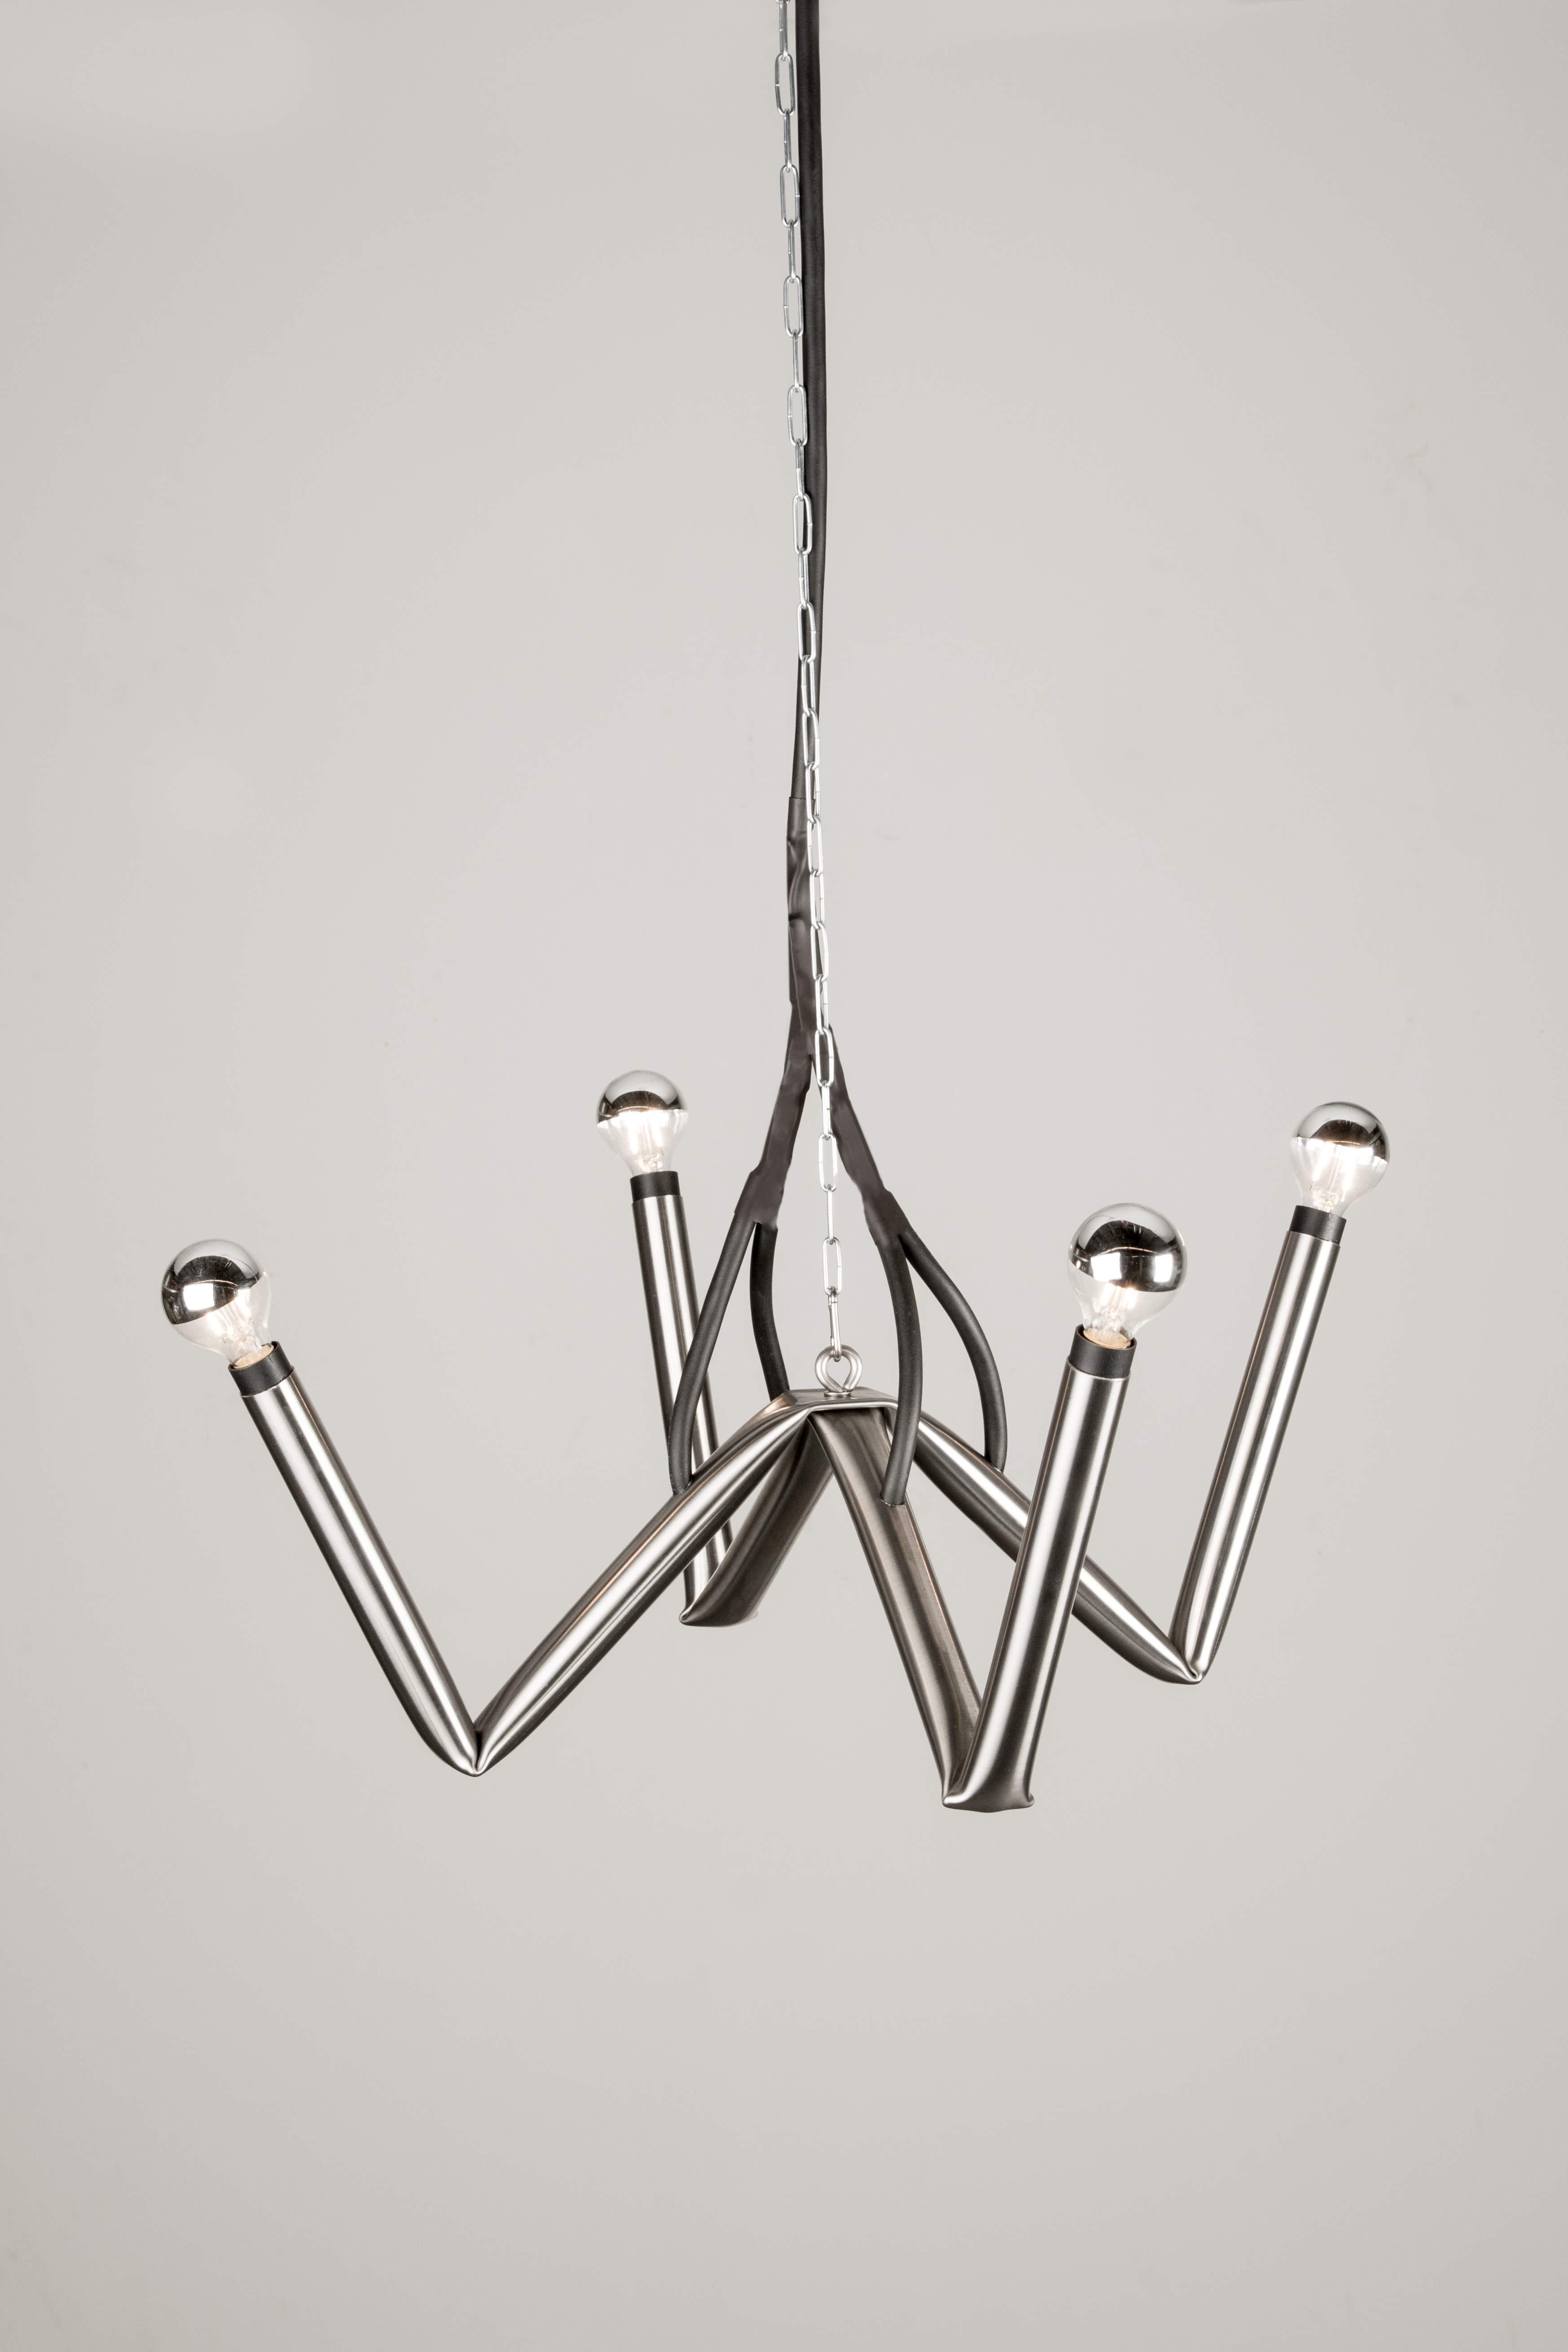 Les premières versions de la lampe Stupid Bendings ont été conçues comme présentoir pour le stand du magazine Kaleidoscope lors de la foire d'art Artissima 2009 à Turin, en Italie.
Ces lampes sont fabriquées directement par le designer dans son